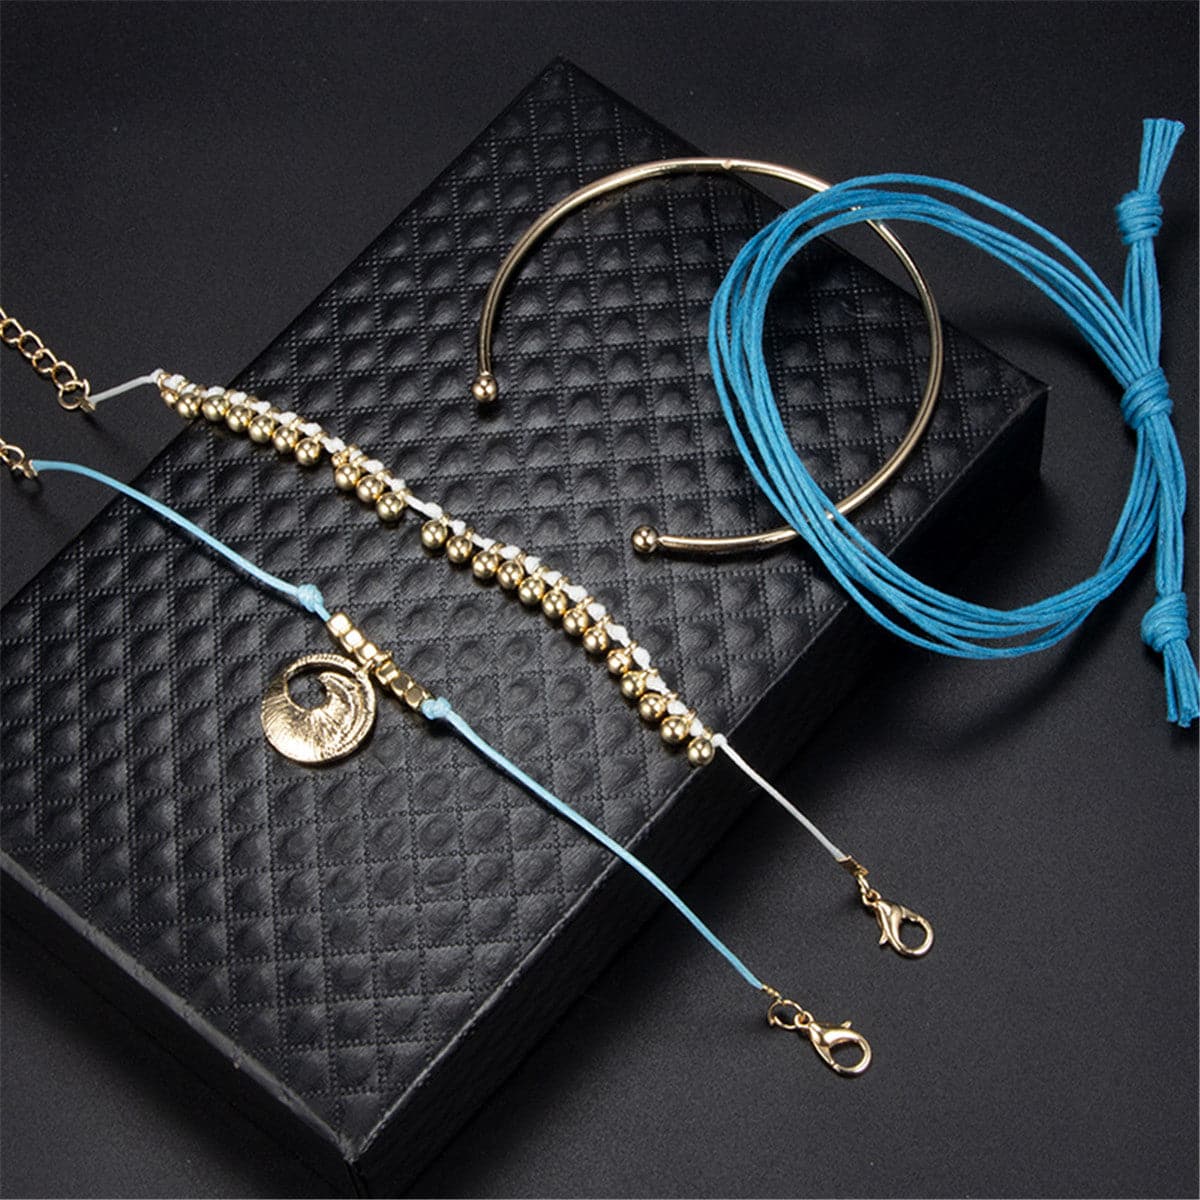 Blue & 18K Gold-Plated Wave Charm Bracelet Set